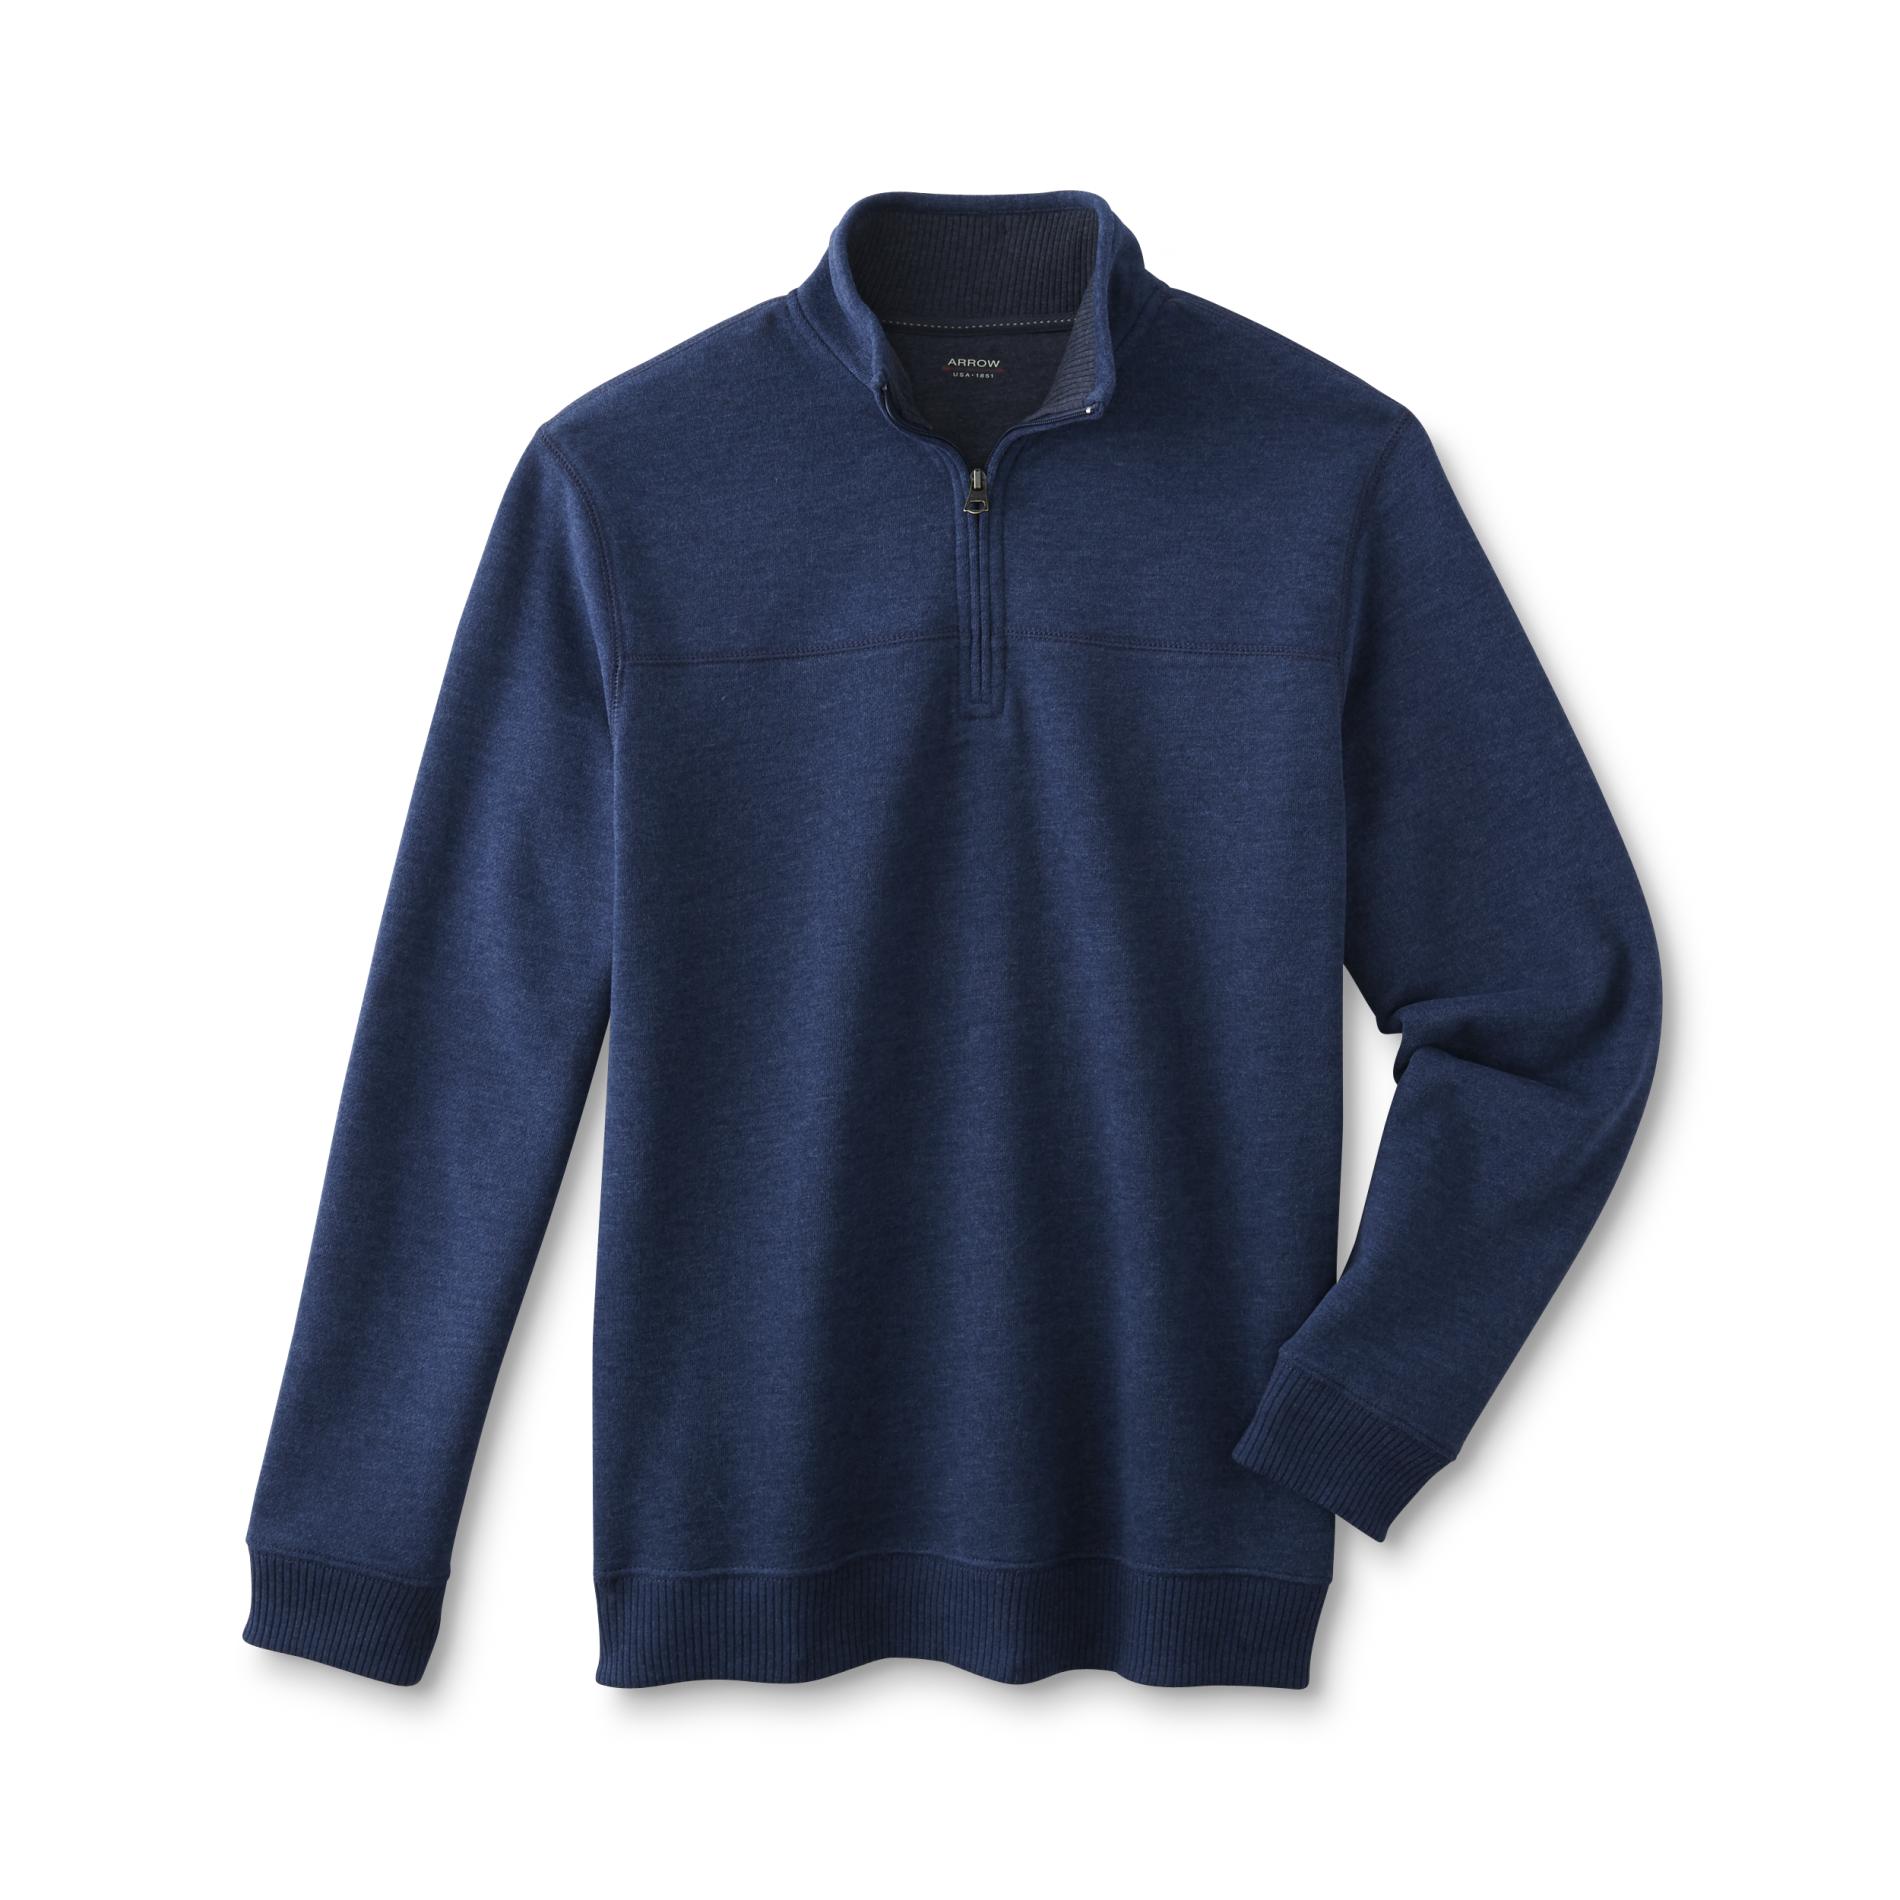 Arrow Men's Quarter-Zip Sweater